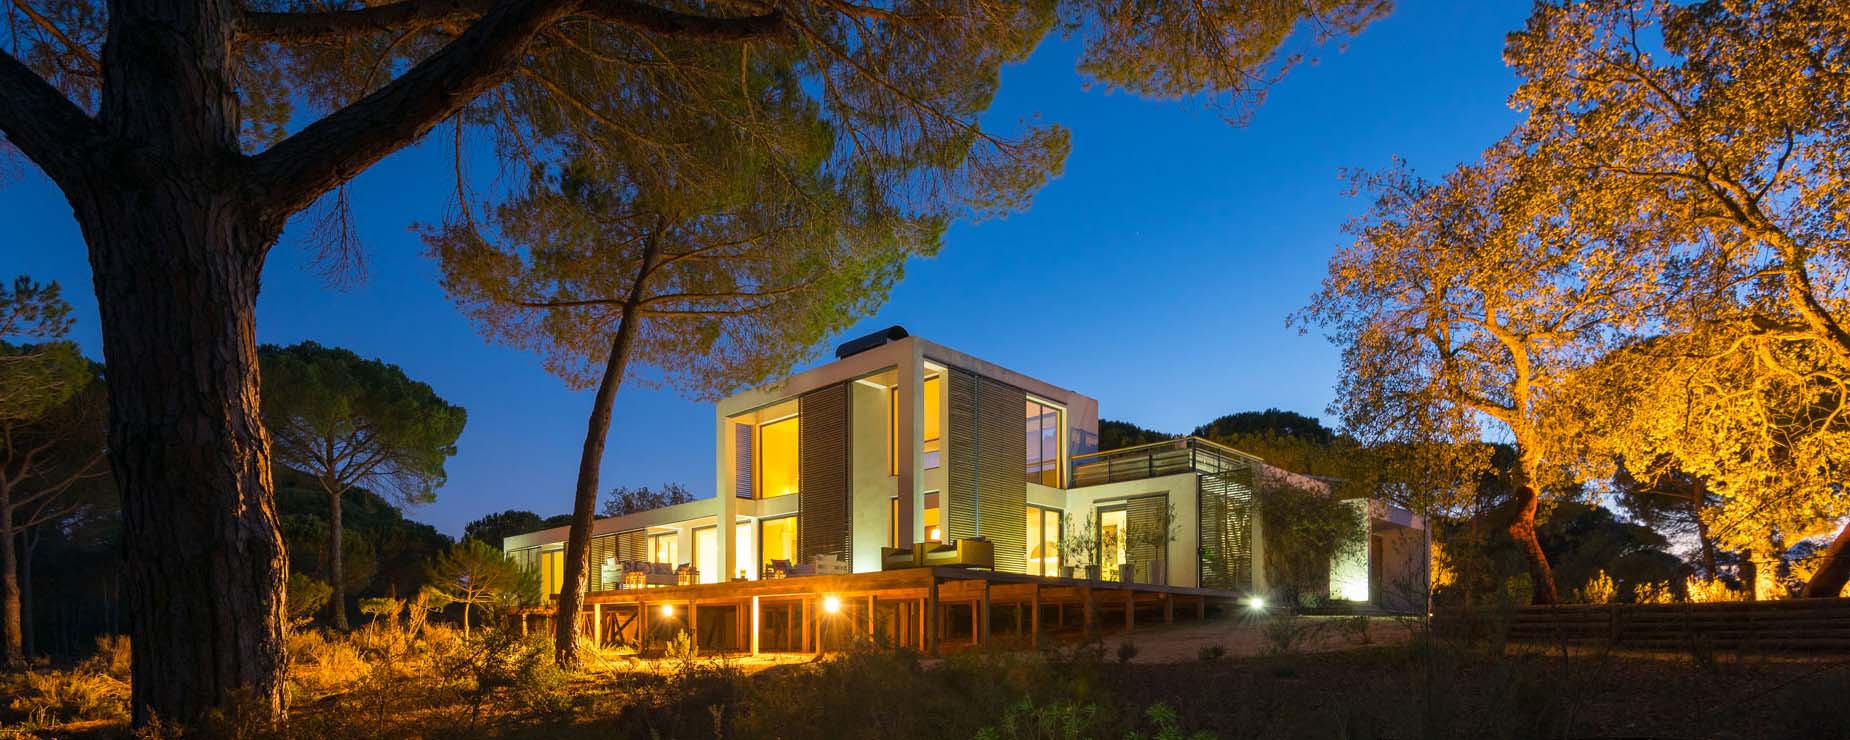 Luxus Villa Portugal Mieten